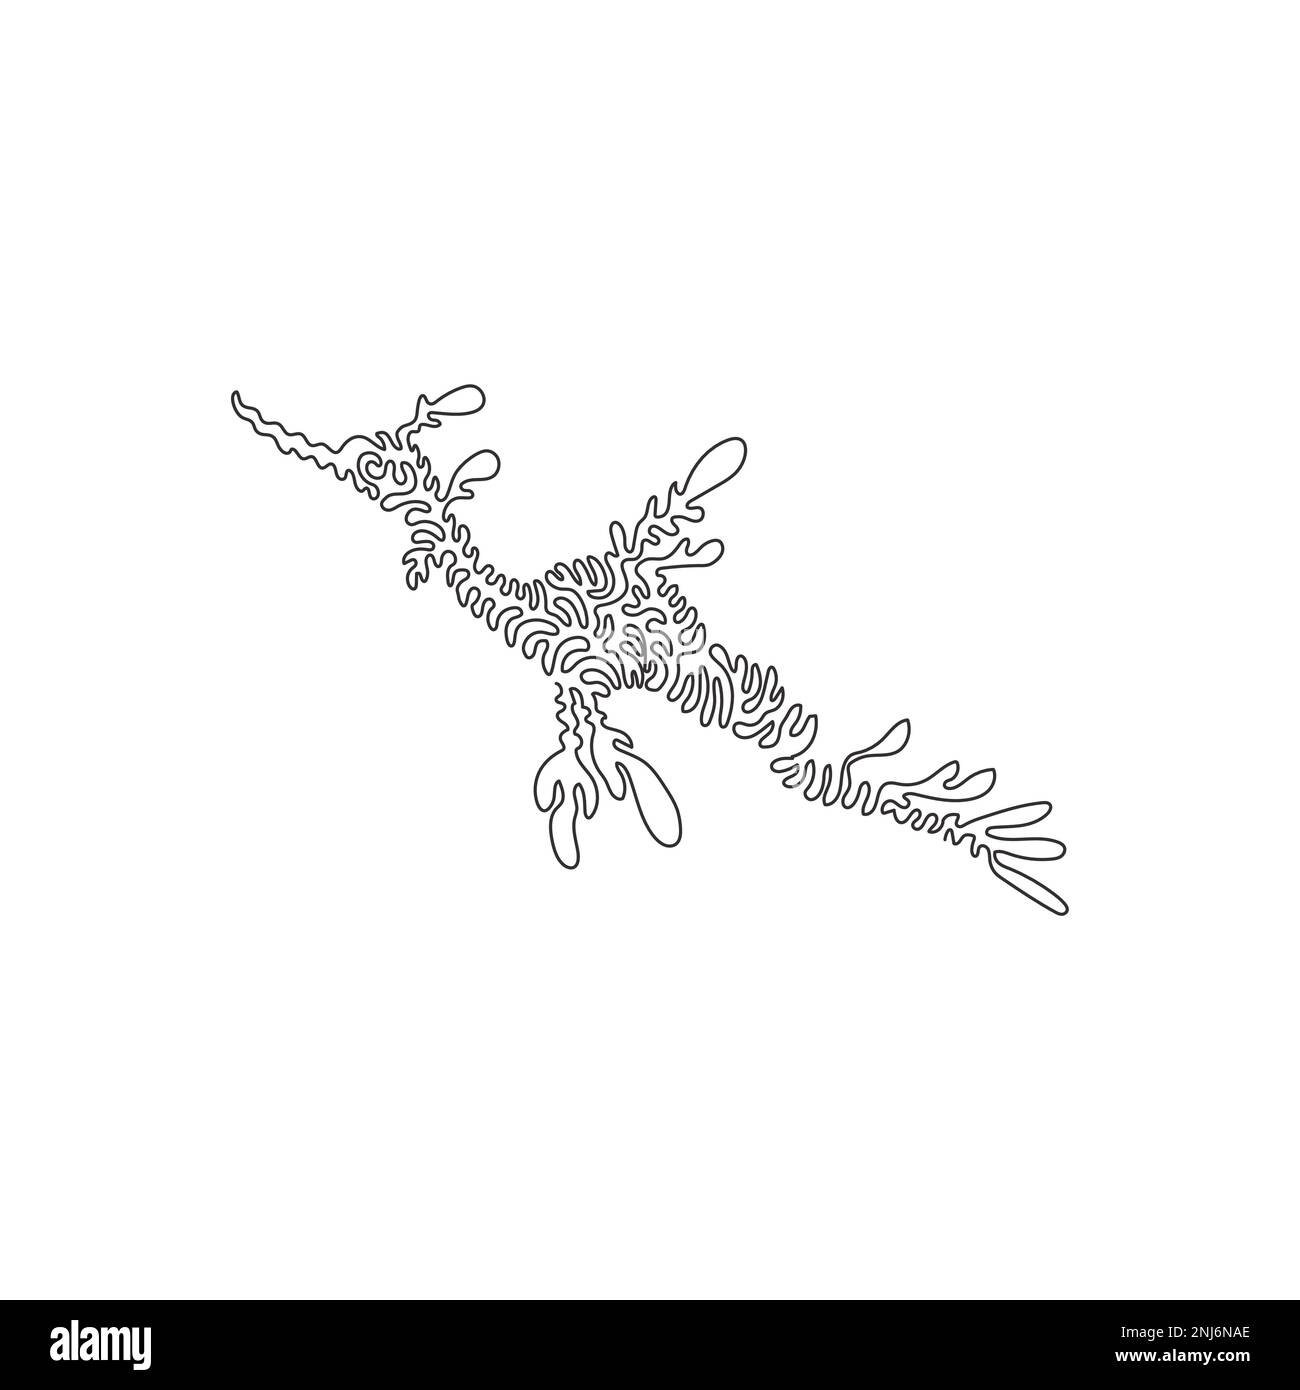 Dessin d'une ligne curly unique d'art abstrait seadragon élégant Dessin en ligne continue dessin vectoriel illustration de l'algue flottante camouflée Illustration de Vecteur